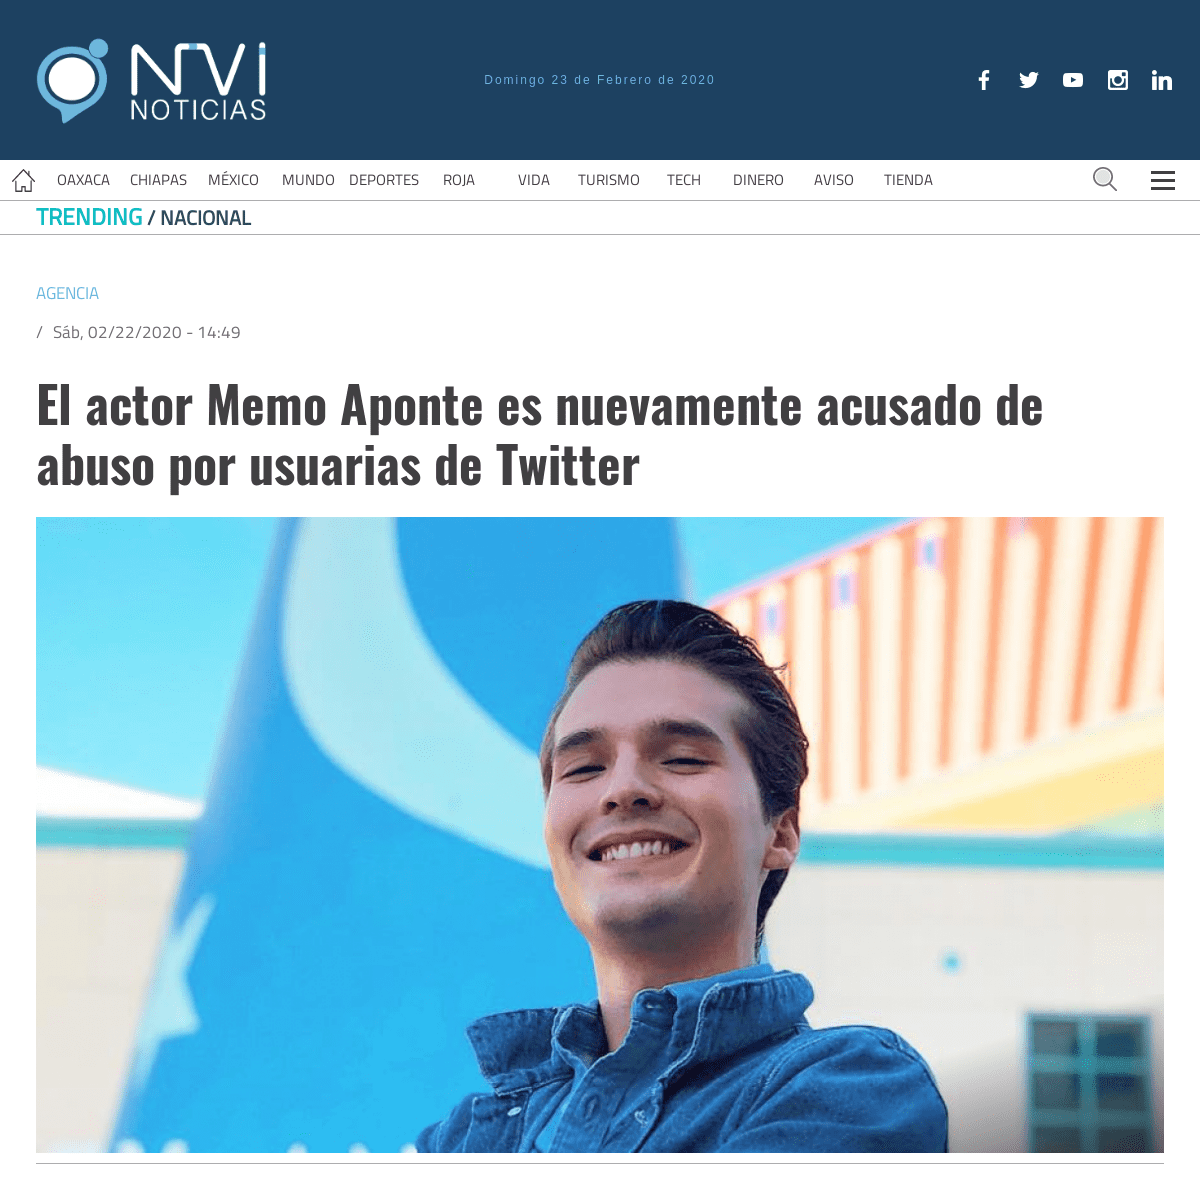 A complete backup of www.nvinoticias.com/nota/138821/el-actor-memo-aponte-es-nuevamente-acusado-de-abuso-por-usuarias-de-twitter